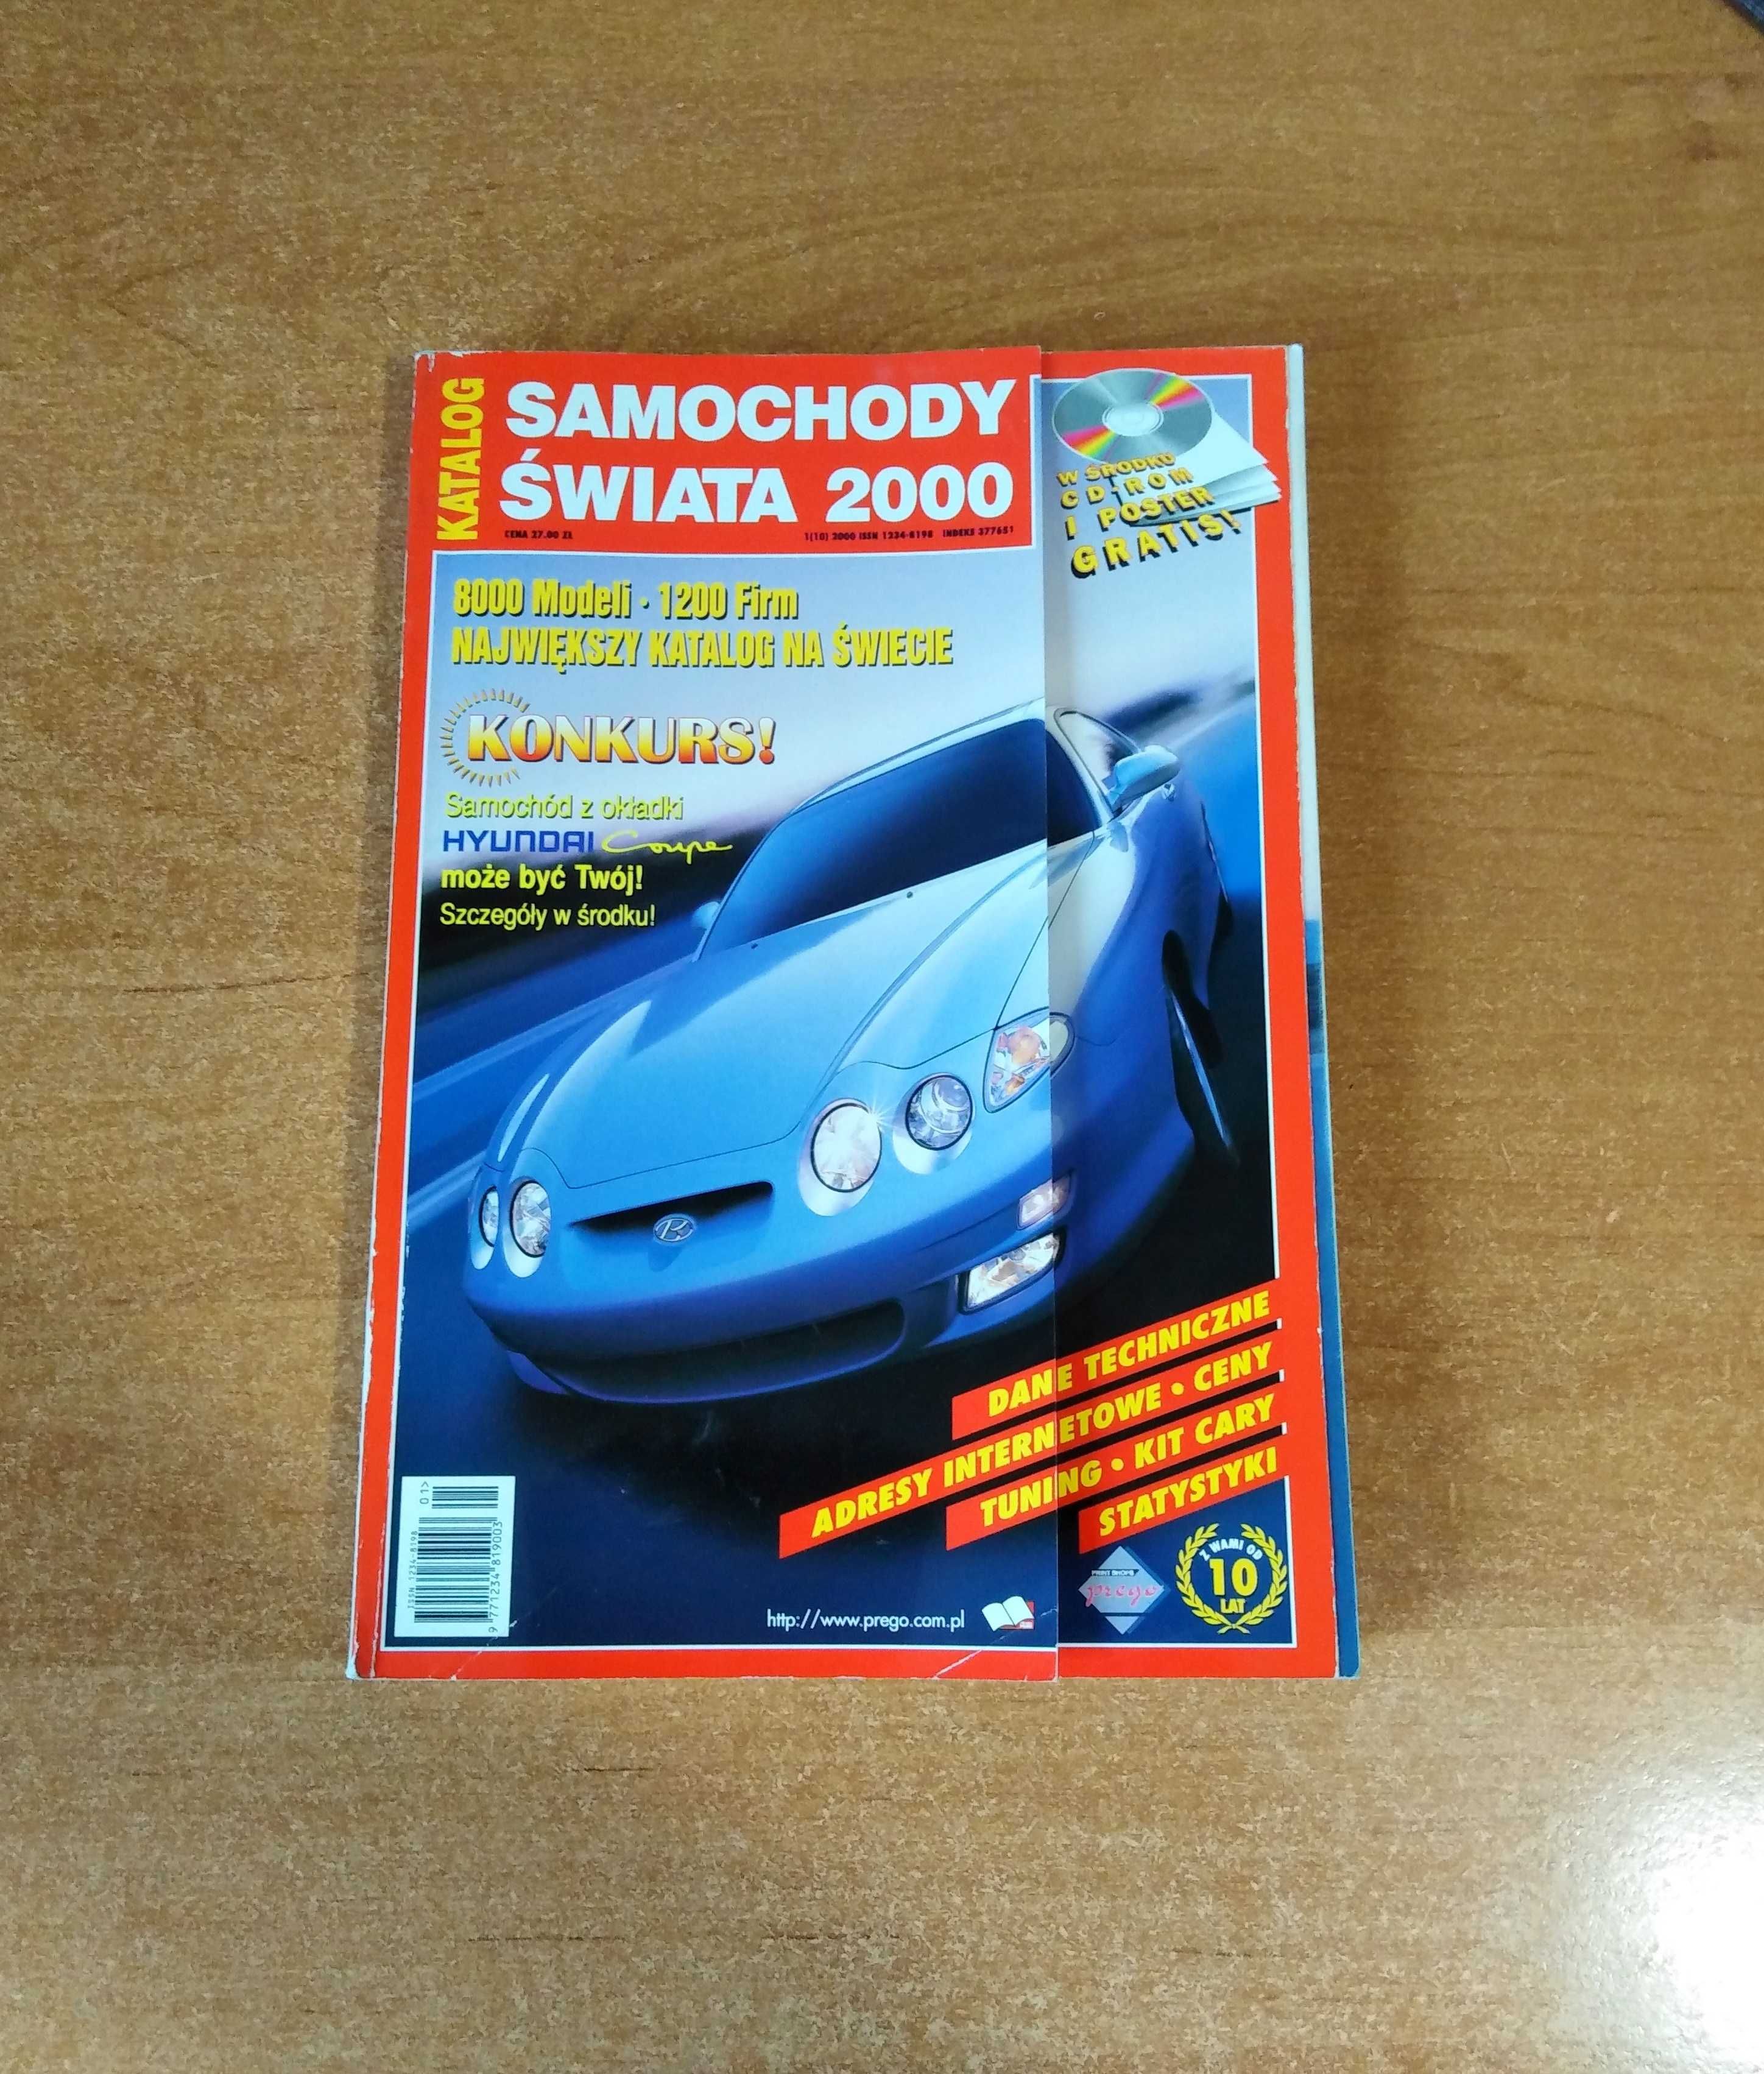 Katalog Samochody świata 2000 r. – 8000 modeli, 1200 firm.